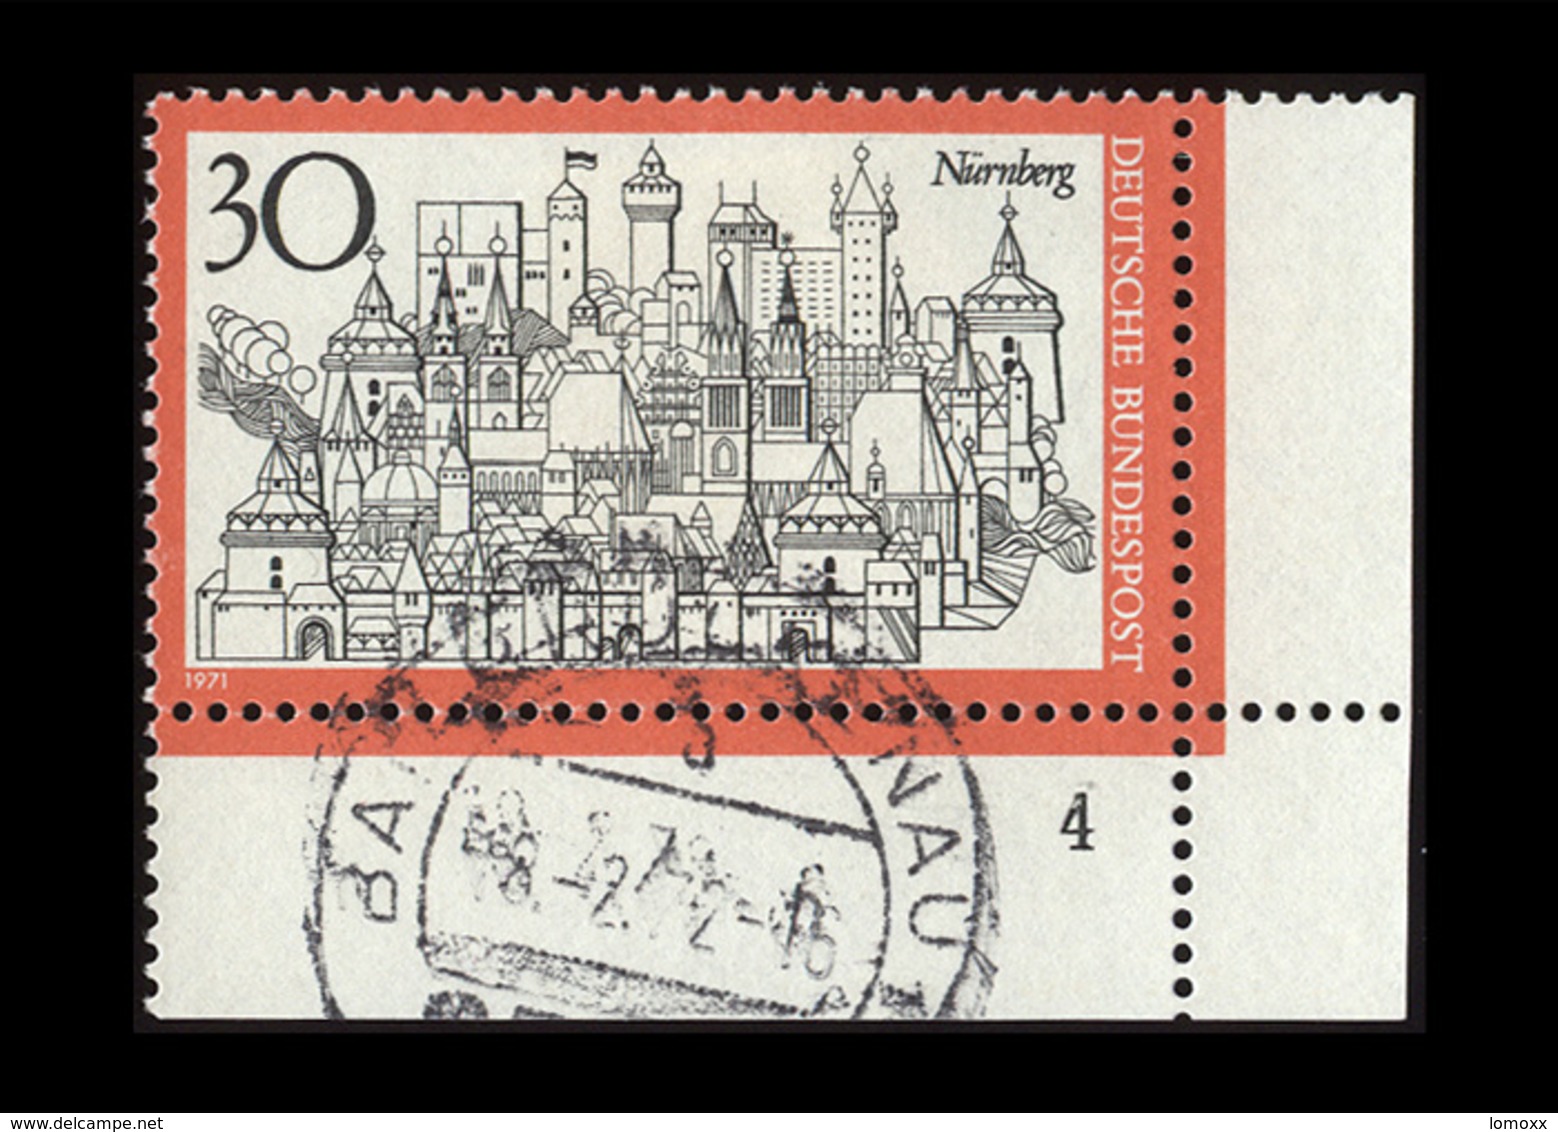 BRD 1971, Michel-Nr. 678, Fremdenverkehr Nürnberg 30 Pf., Eckrand Unten Rechts Mit Formnummer 4, Gestempelt - Gebraucht